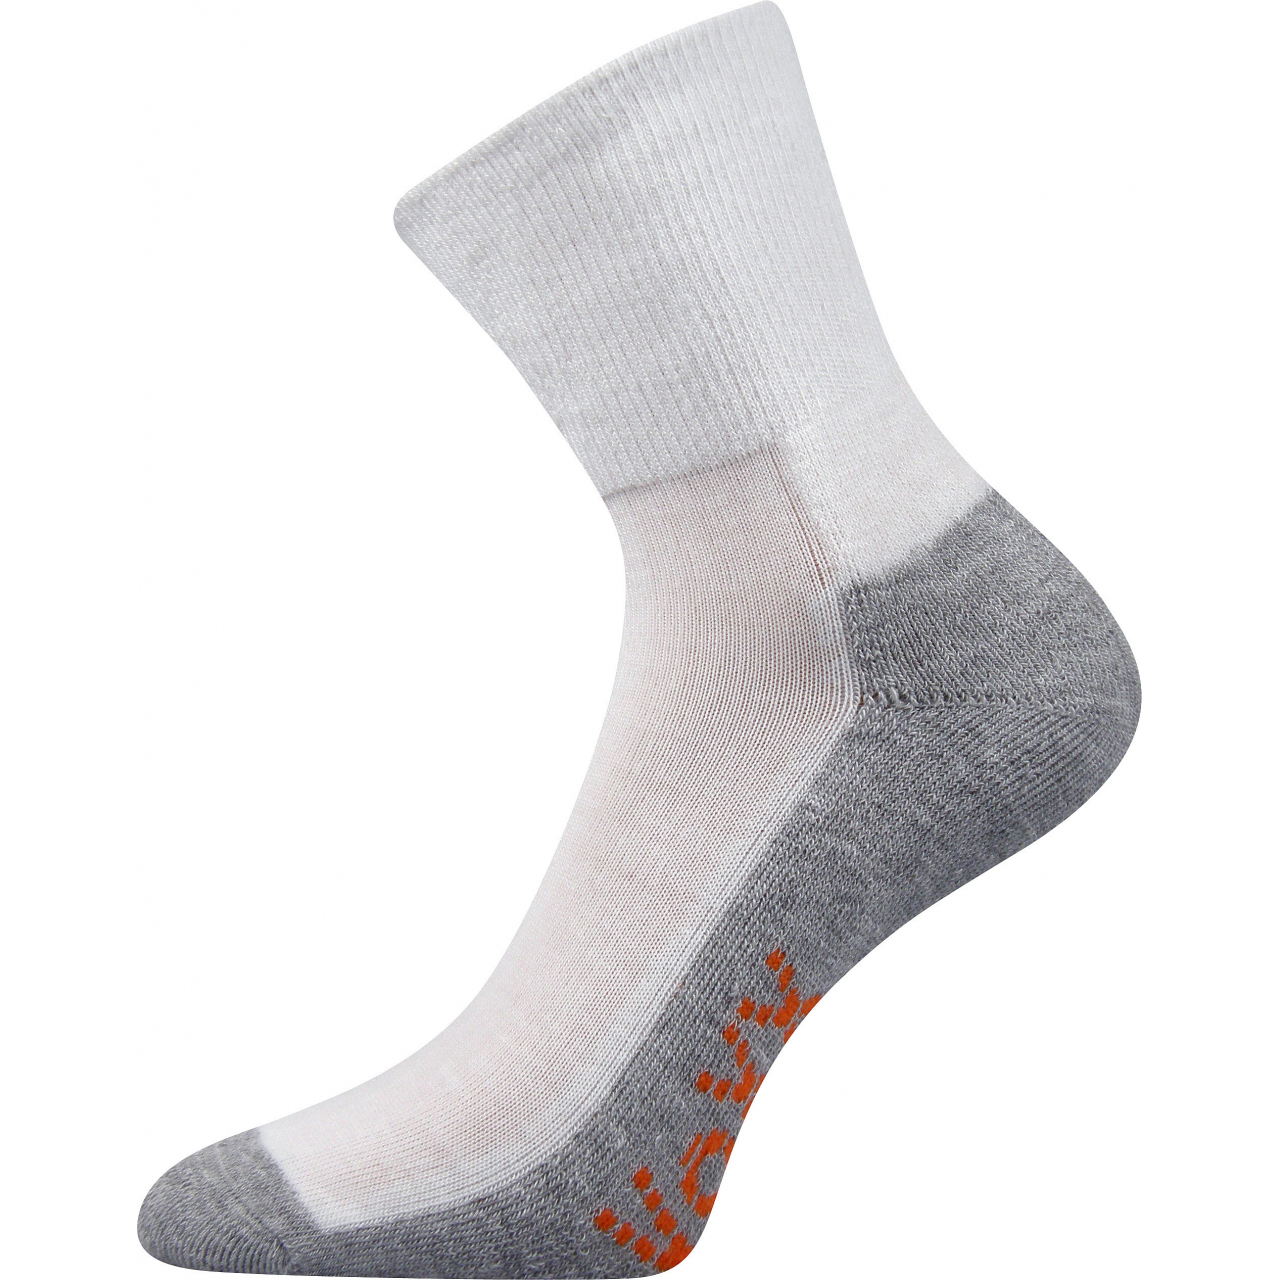 Ponožky sportovní Voxx Vigo CoolMax - bílé-šedé, 39-42